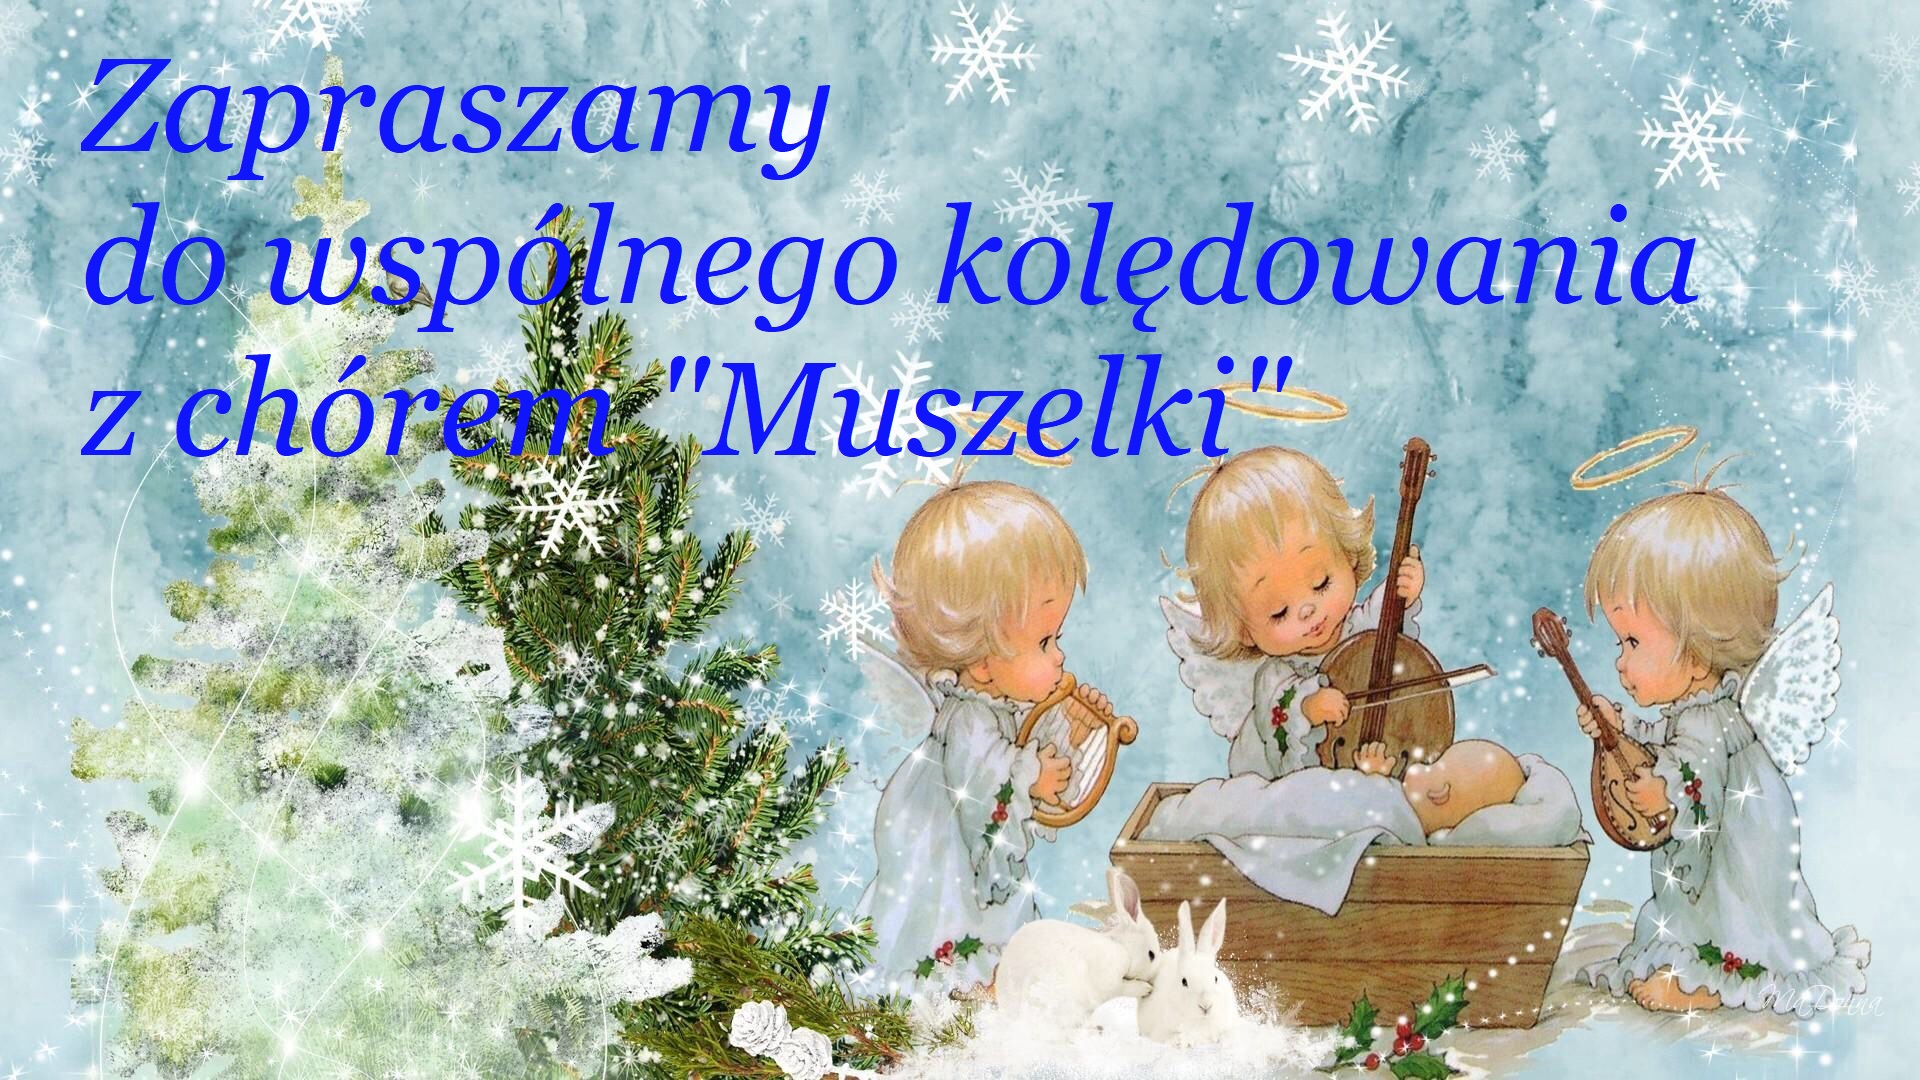 Muzycznych życzeń chóru ‘Muszelki”